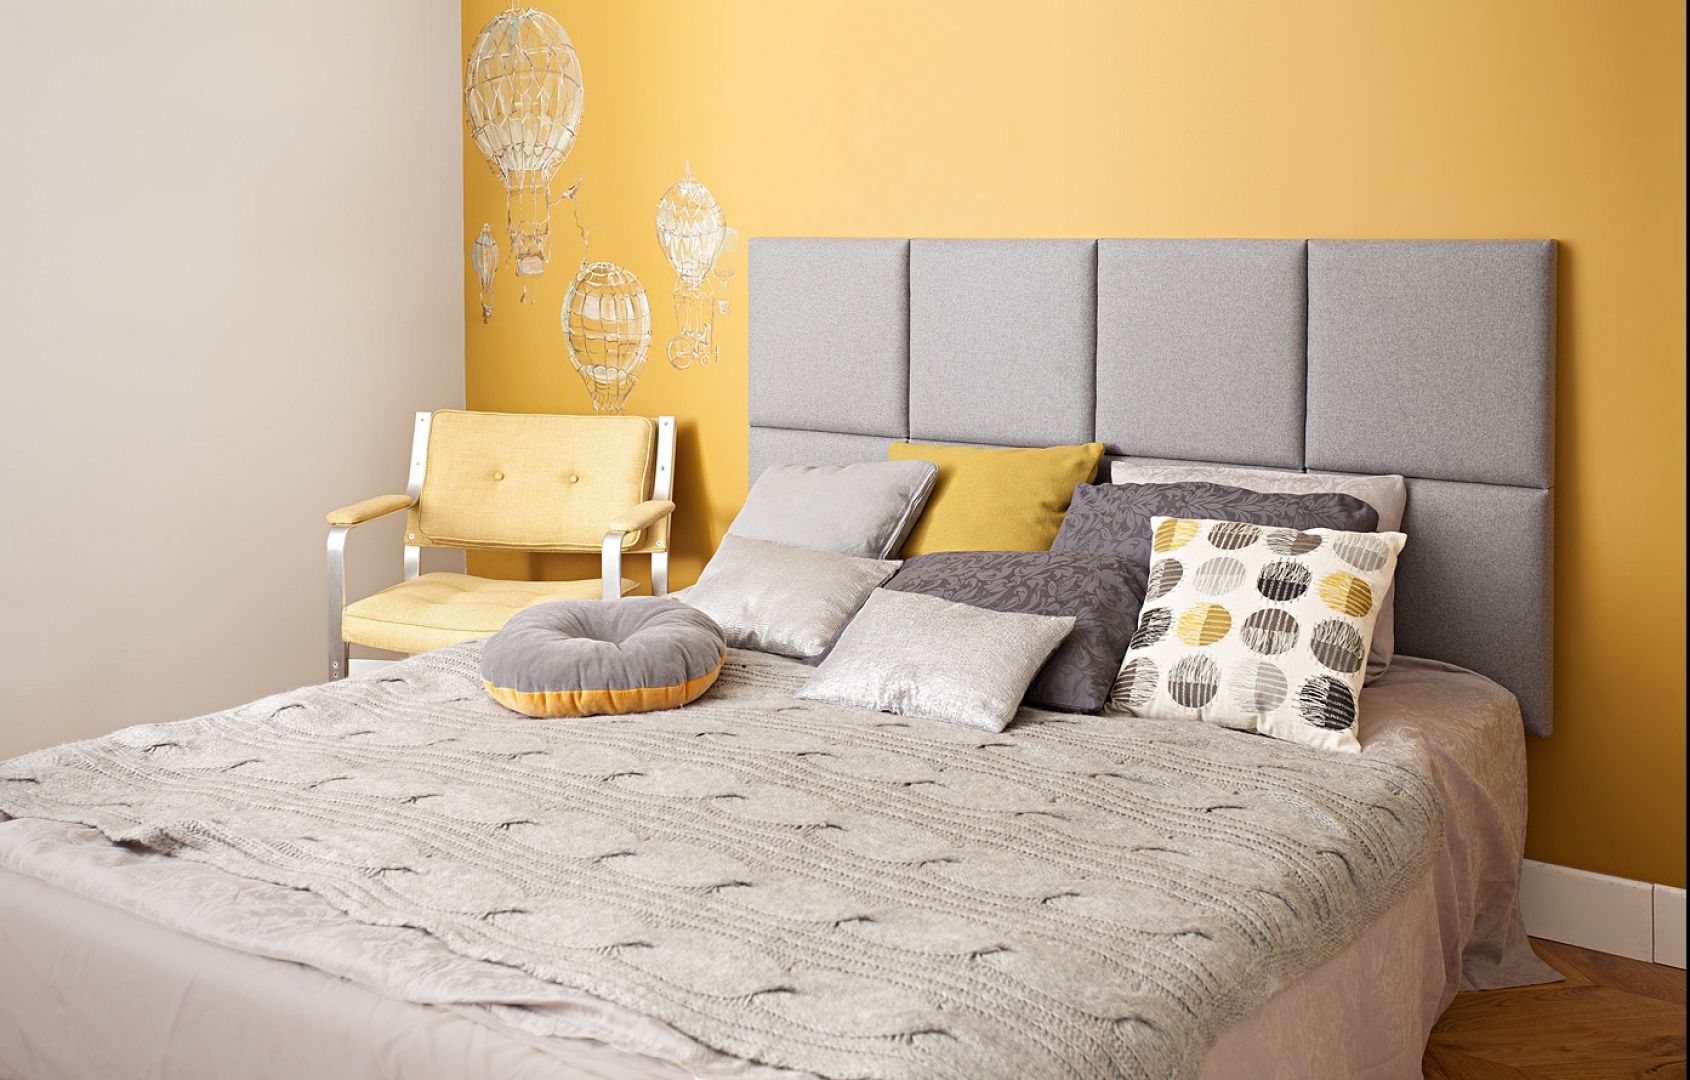 Szary zagłówek łóżka pięknie prezentuje się na tle ściany wykonczonej w kolorze żółtym. Fot. Made for bed